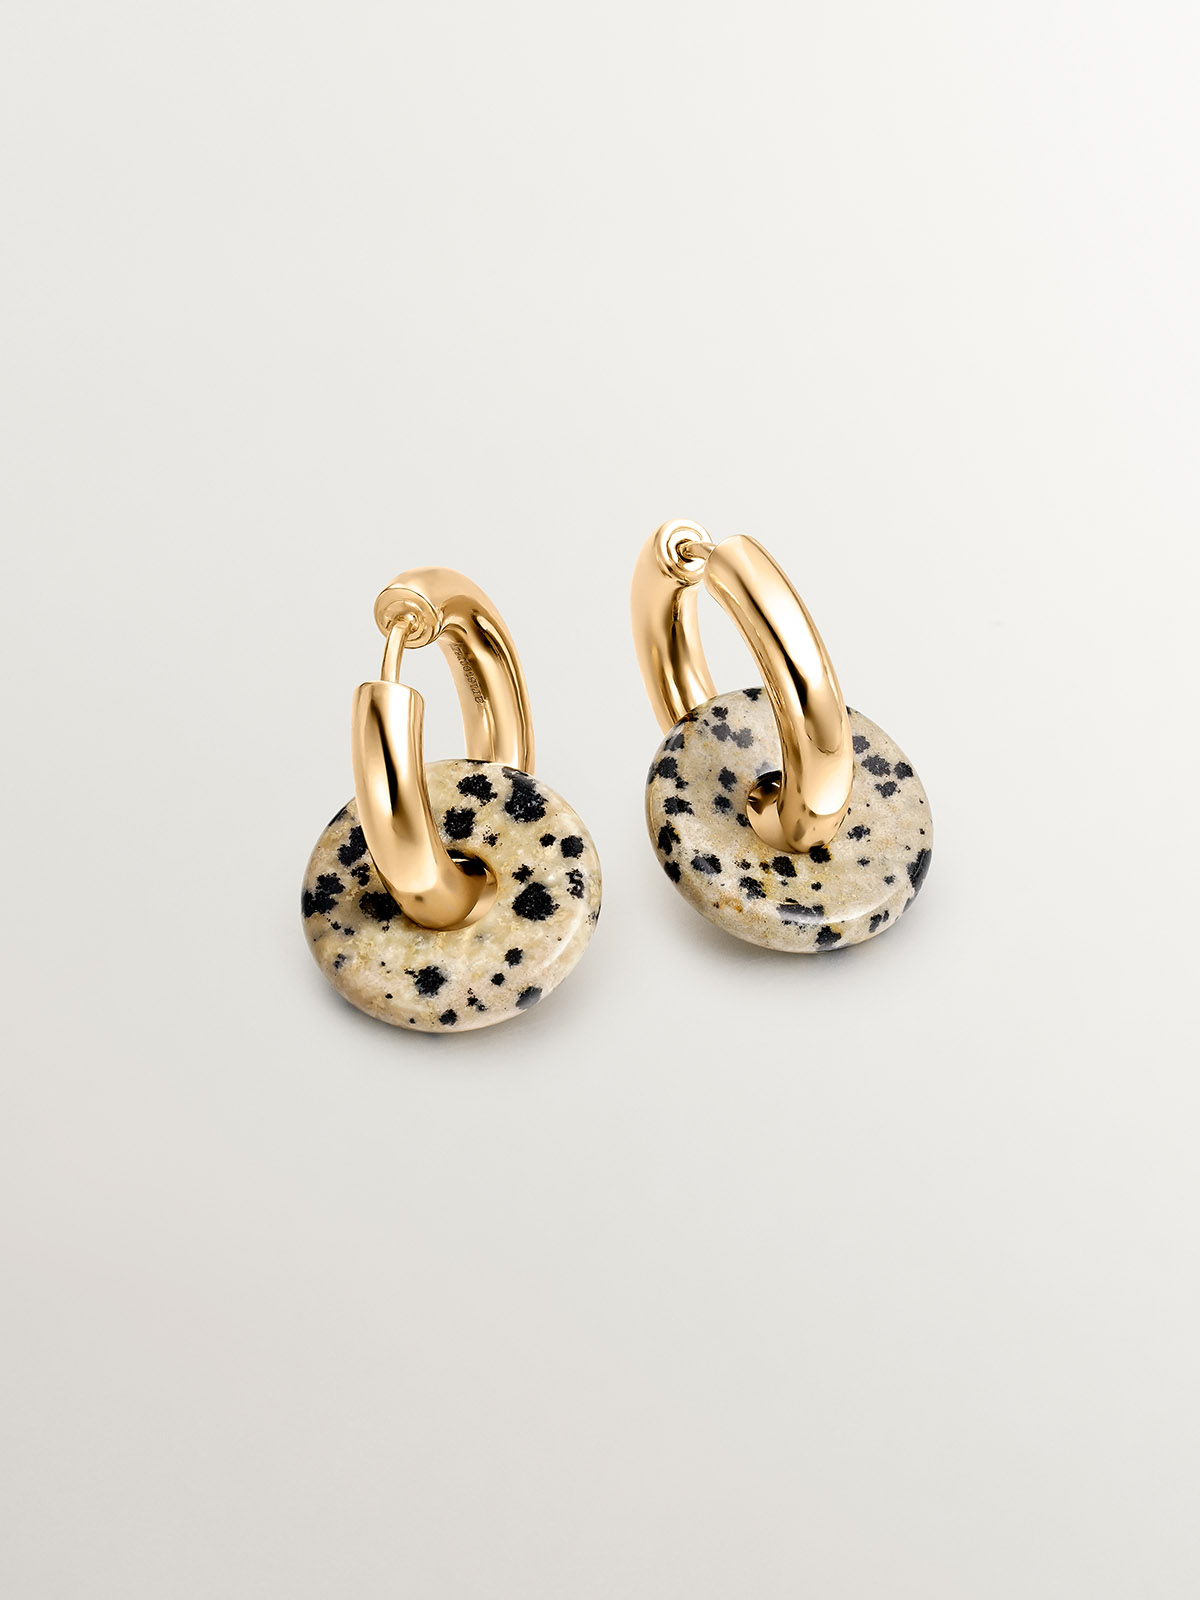 Boucles d'oreilles de taille moyenne en argent 925 plaqué or jaune 18K avec jaspe dalmatien